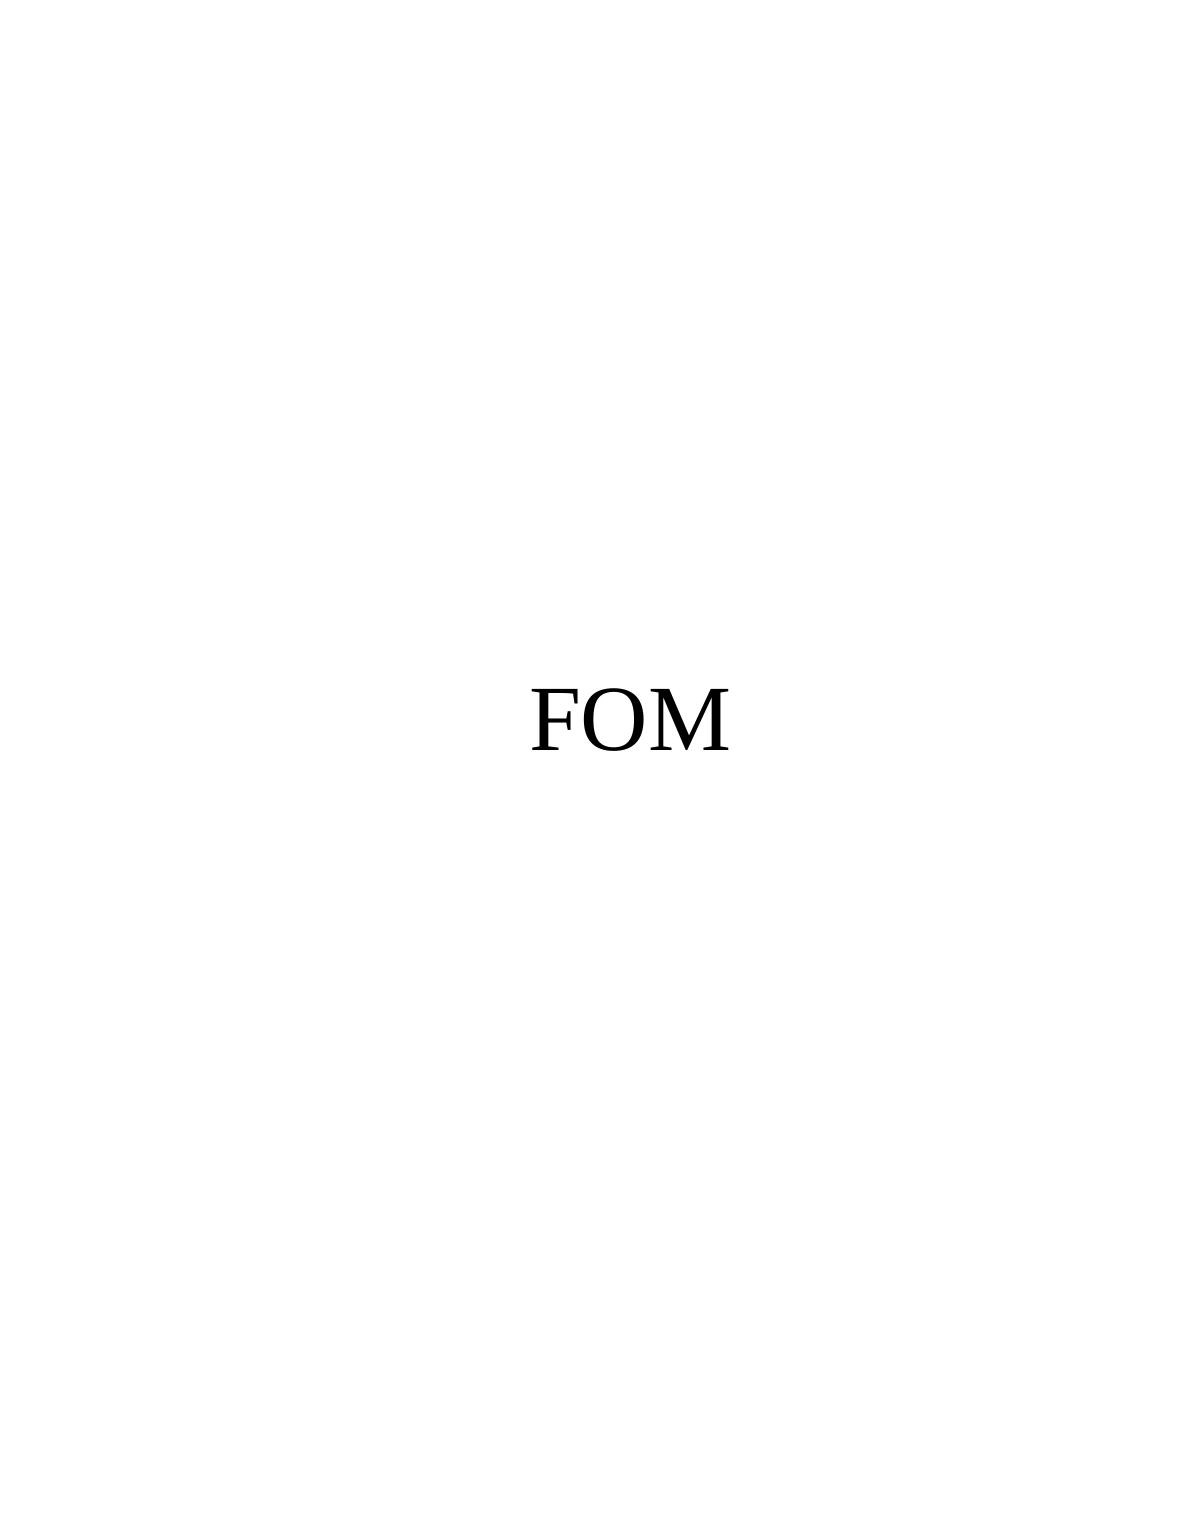 FOM Assignment (Solution)_1